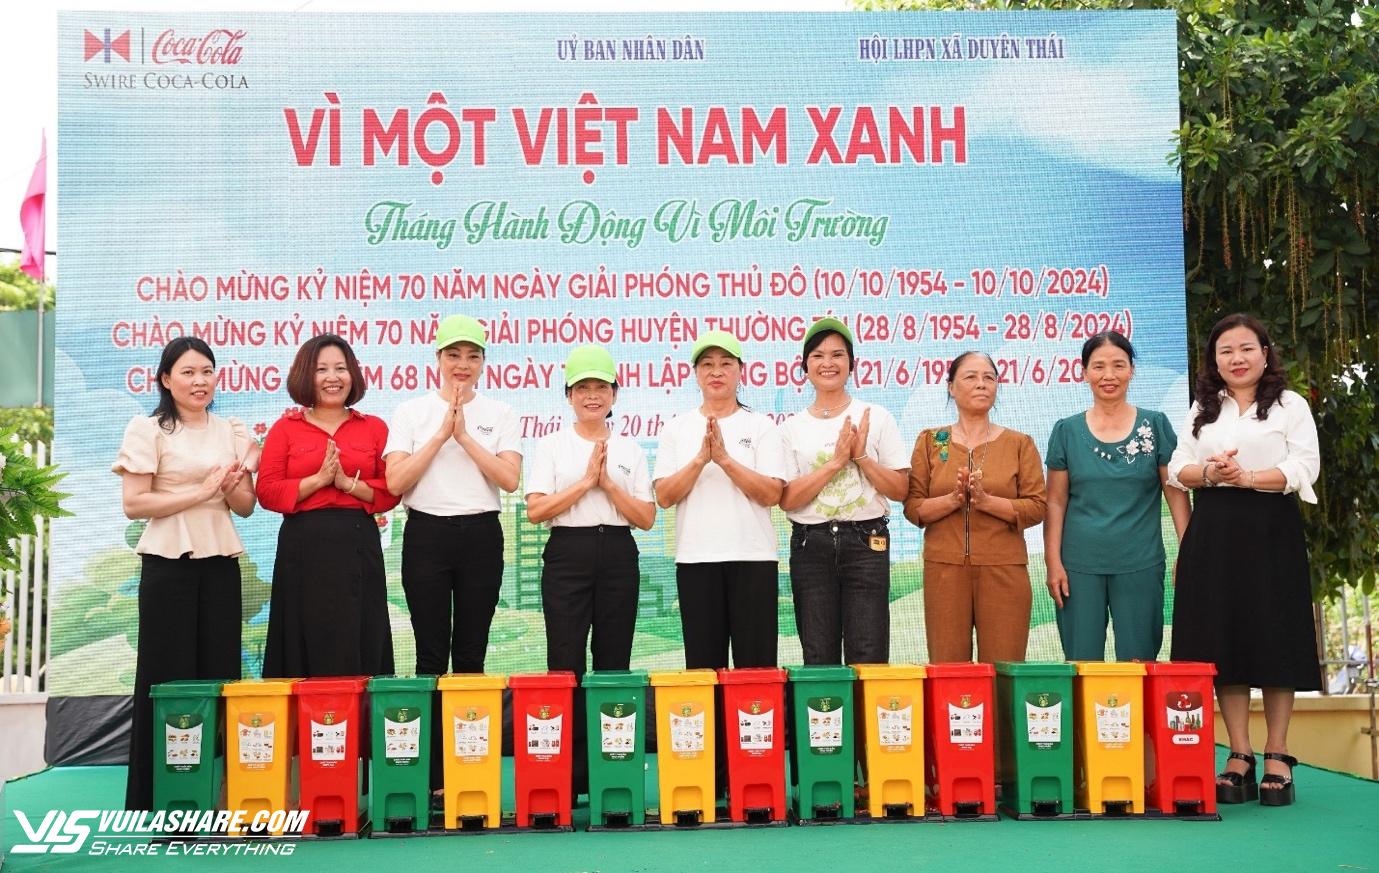 Lãnh đạo H.Thường Tín, lãnh đạo Xã Duyên Thái và lãnh đạo Công ty Coca-Cola Việt Nam trao tặng thùng rác phân loại cho người dân